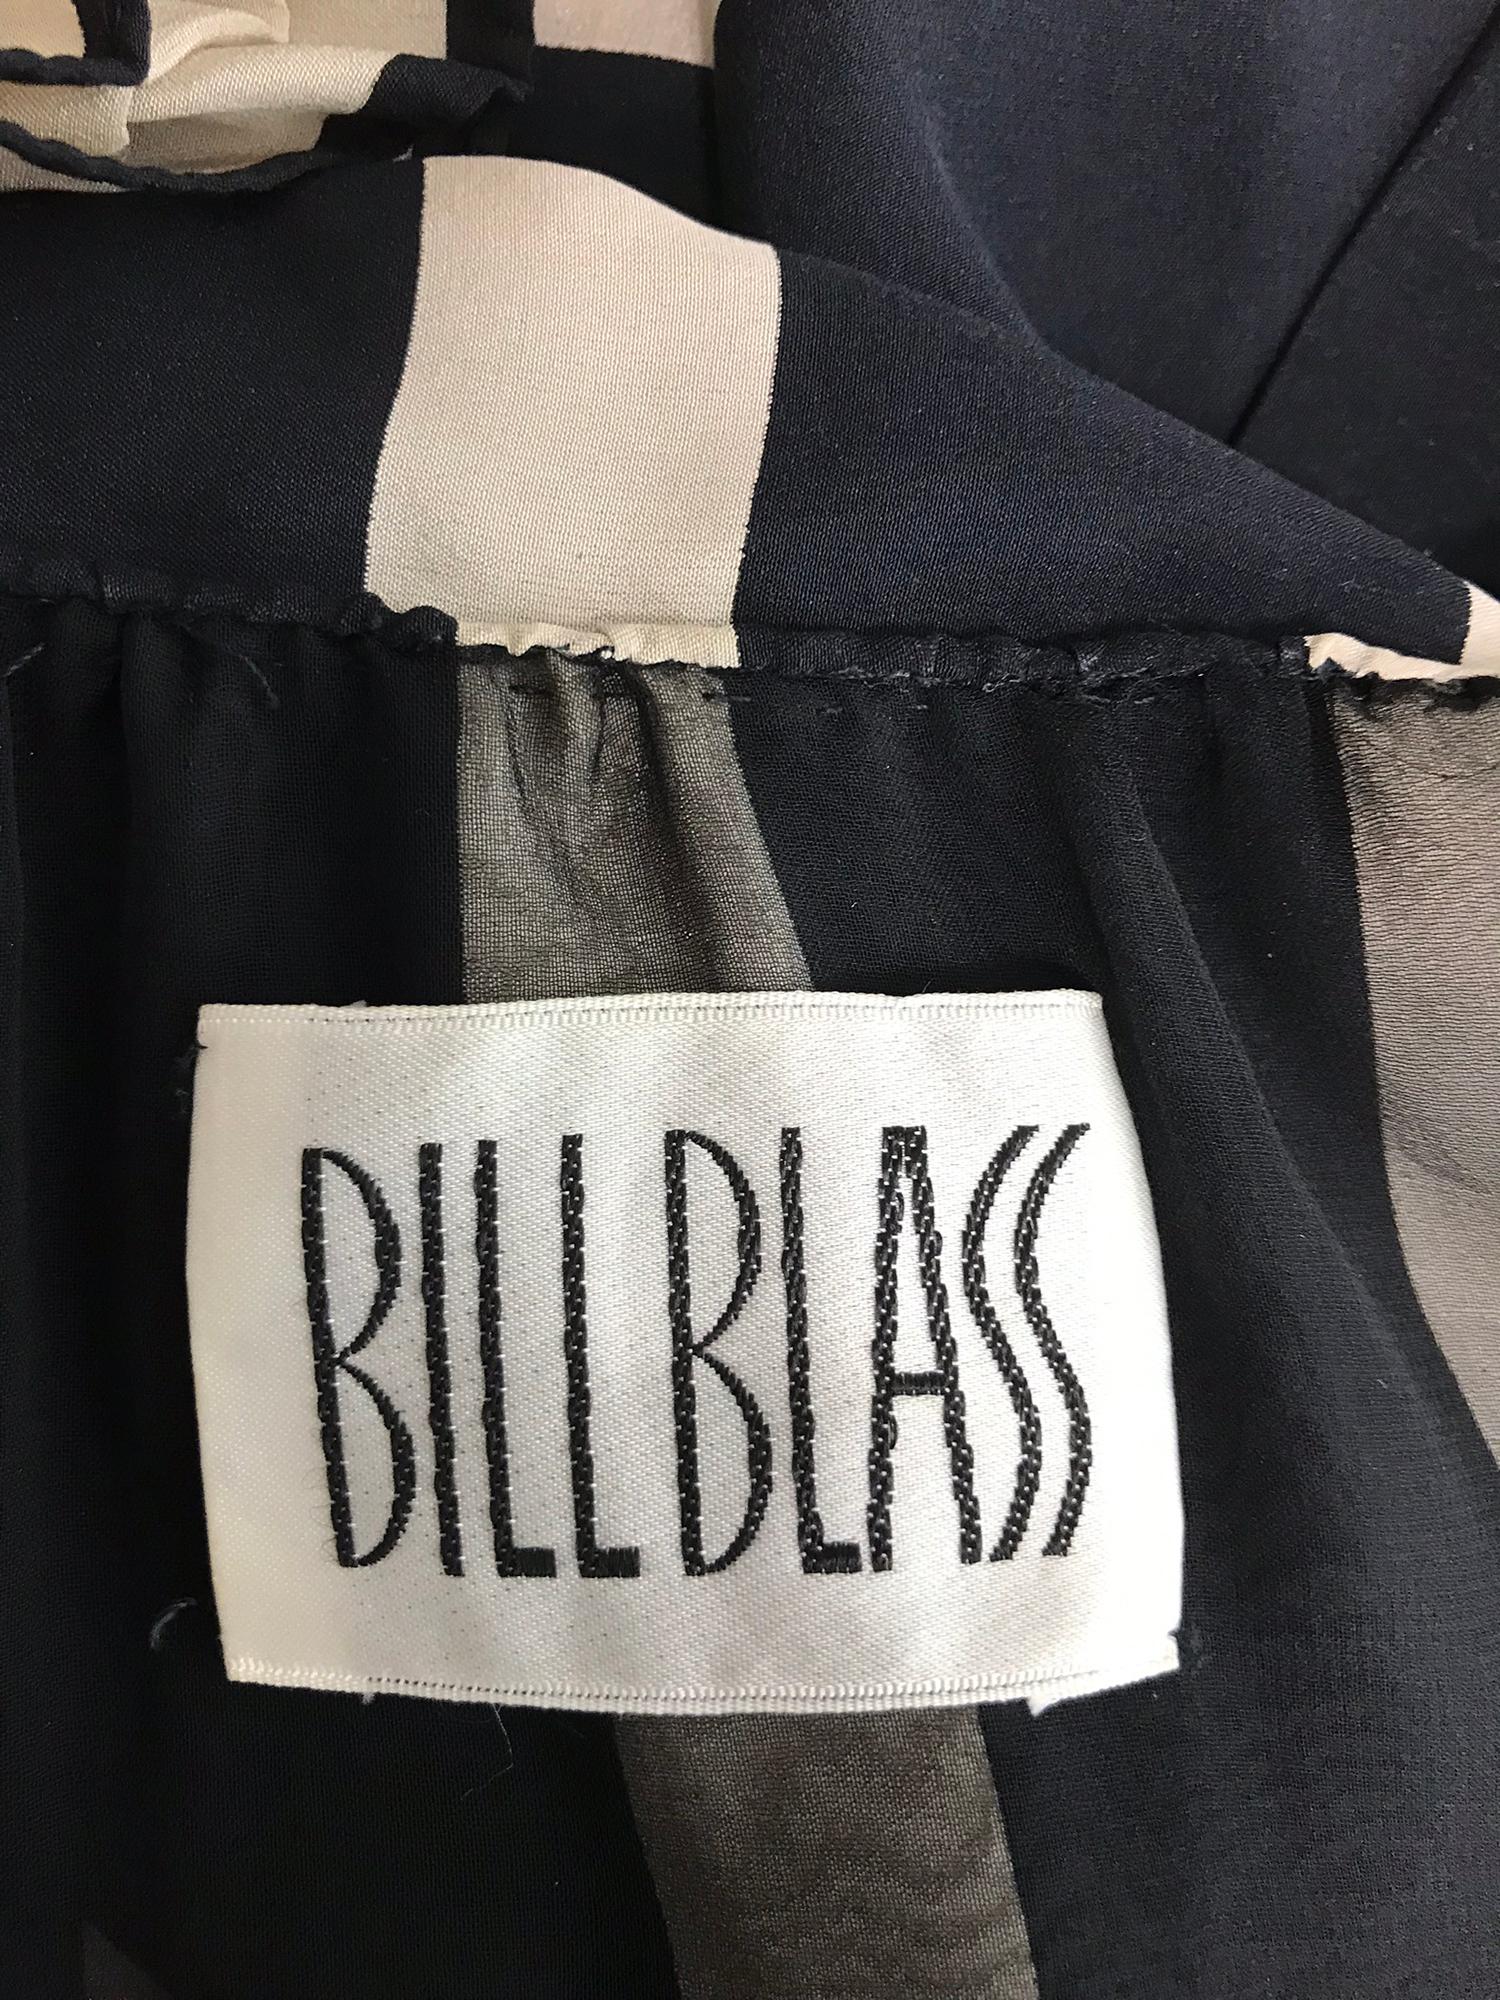 Bill Blass pleated silk black and tan stripe dress 1970s 8